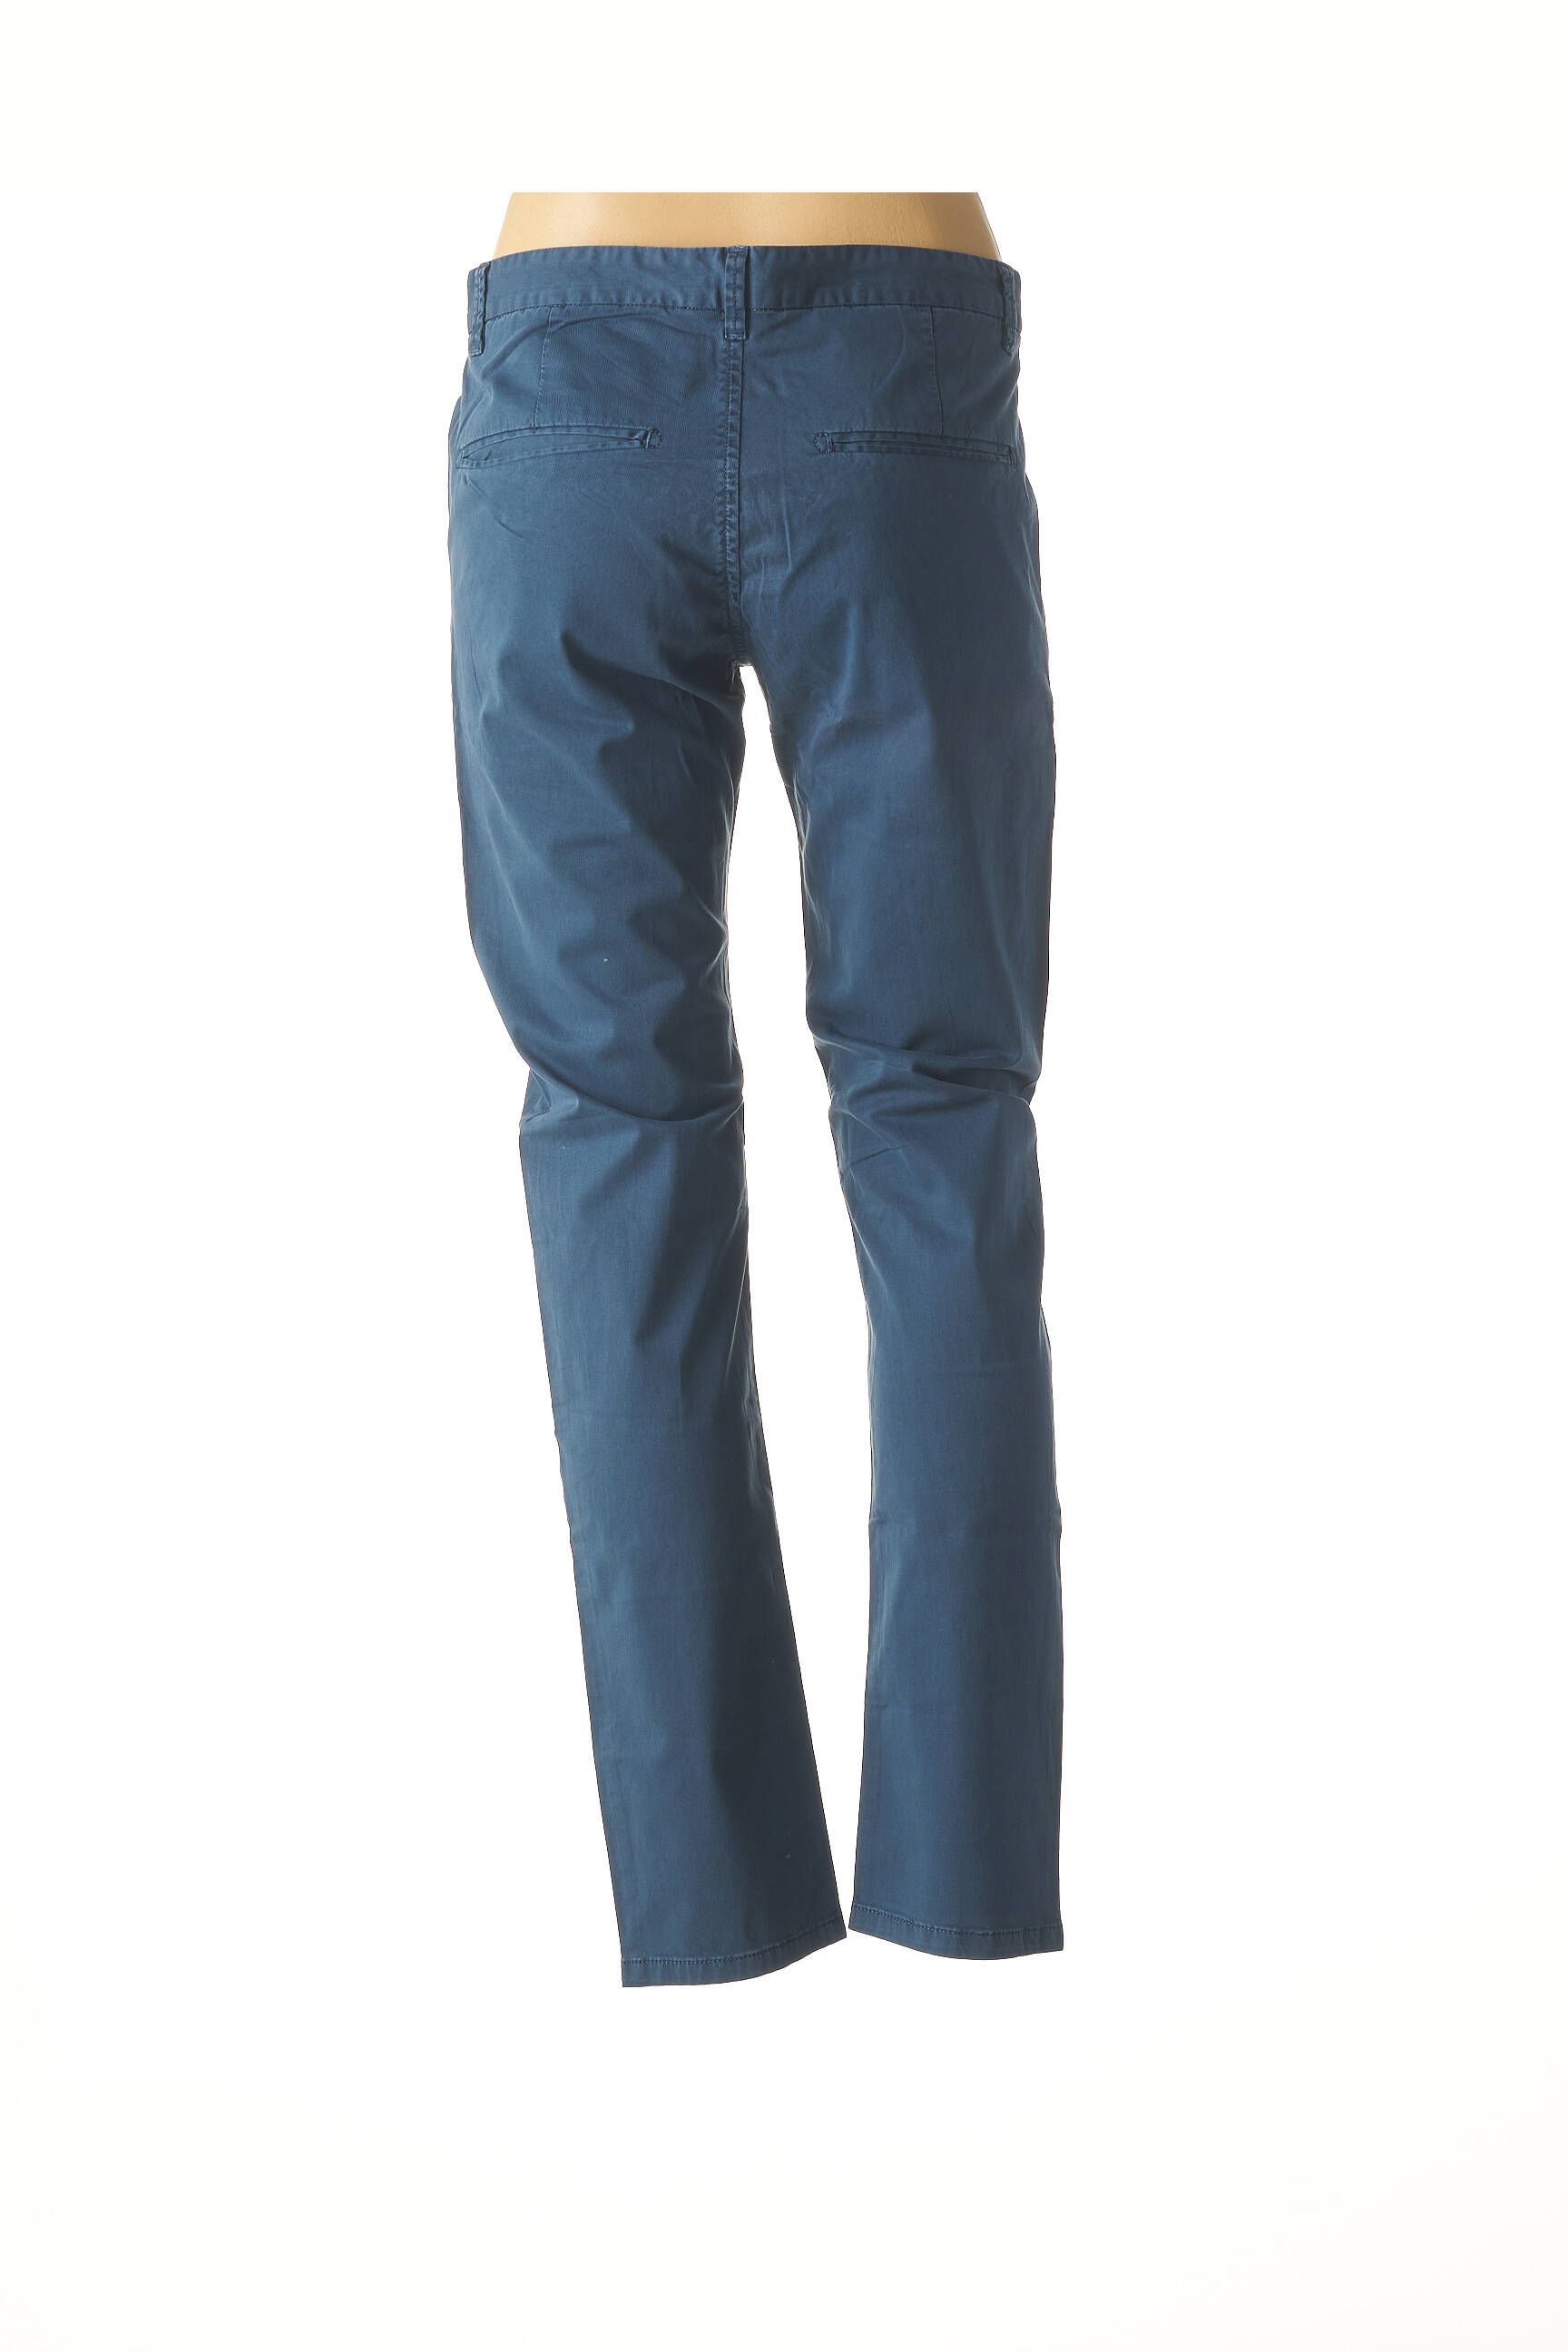 Kenzarro Pantalons Slim Homme De Couleur Bleu 1568170-bleu00 - Modz